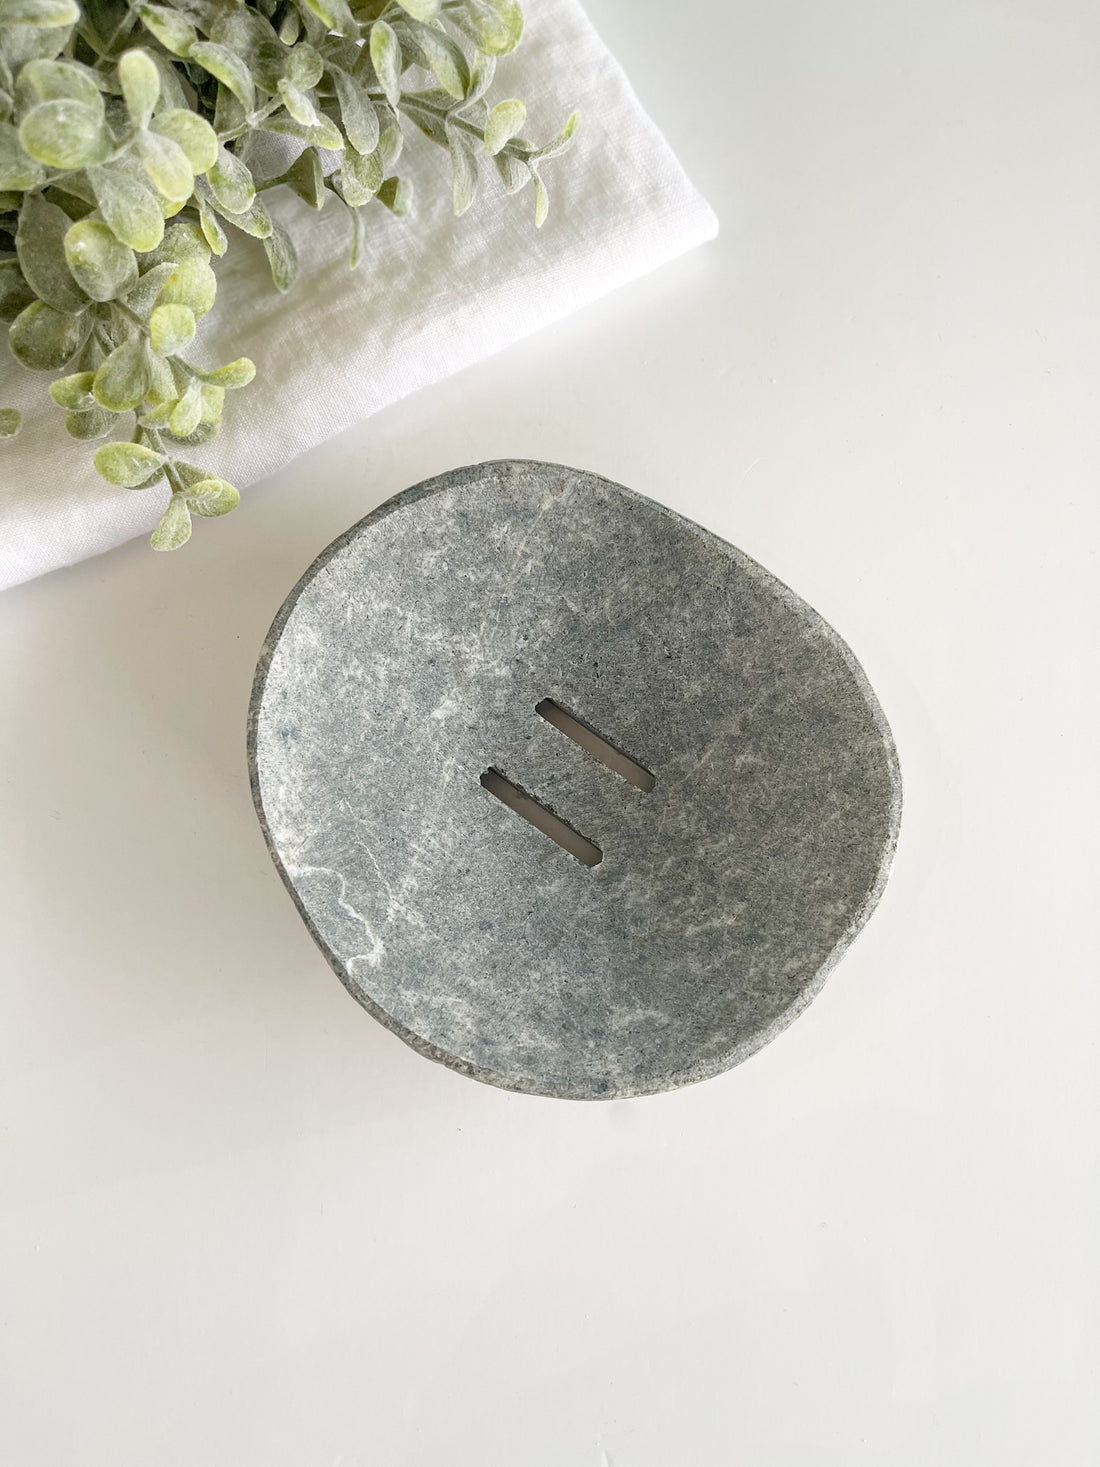 Natural Gray Stone Soap Dish